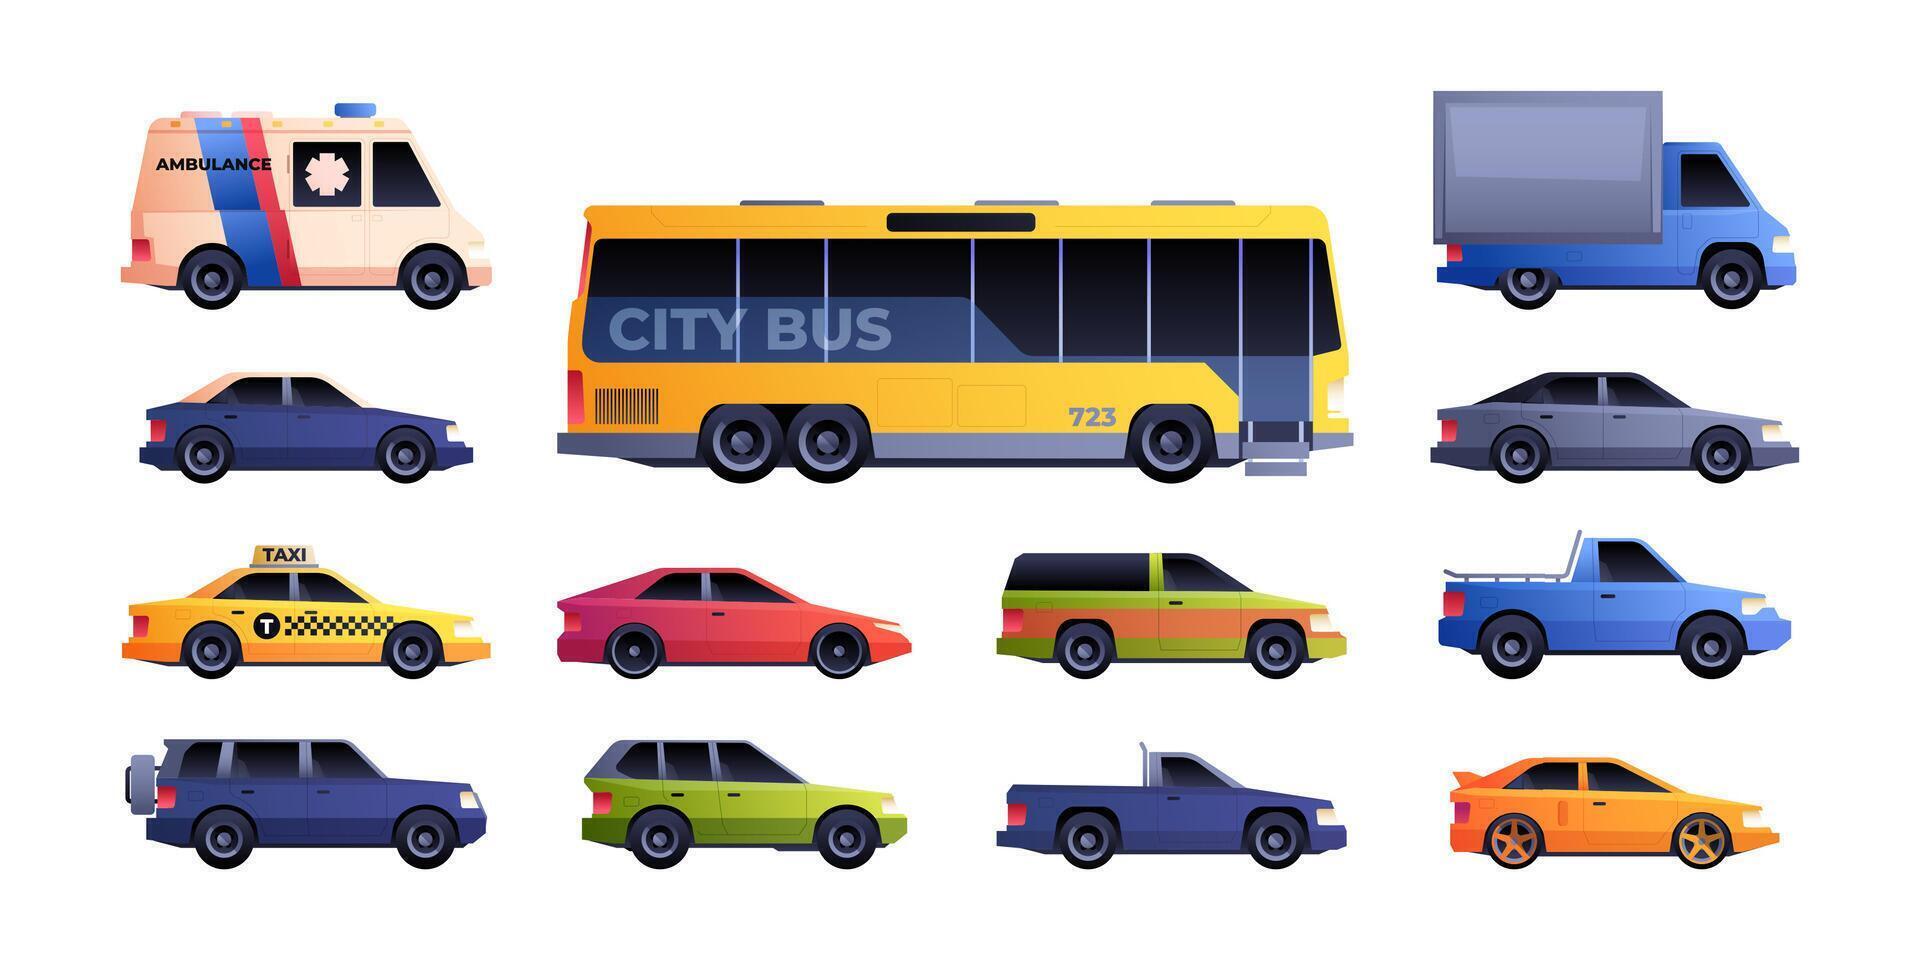 cidade transporte definir. diferente modelos do carros, colorida urbano veículos Táxi ônibus furgão emergência automóveis plano desenho animado estilo. vetor isolado coleção